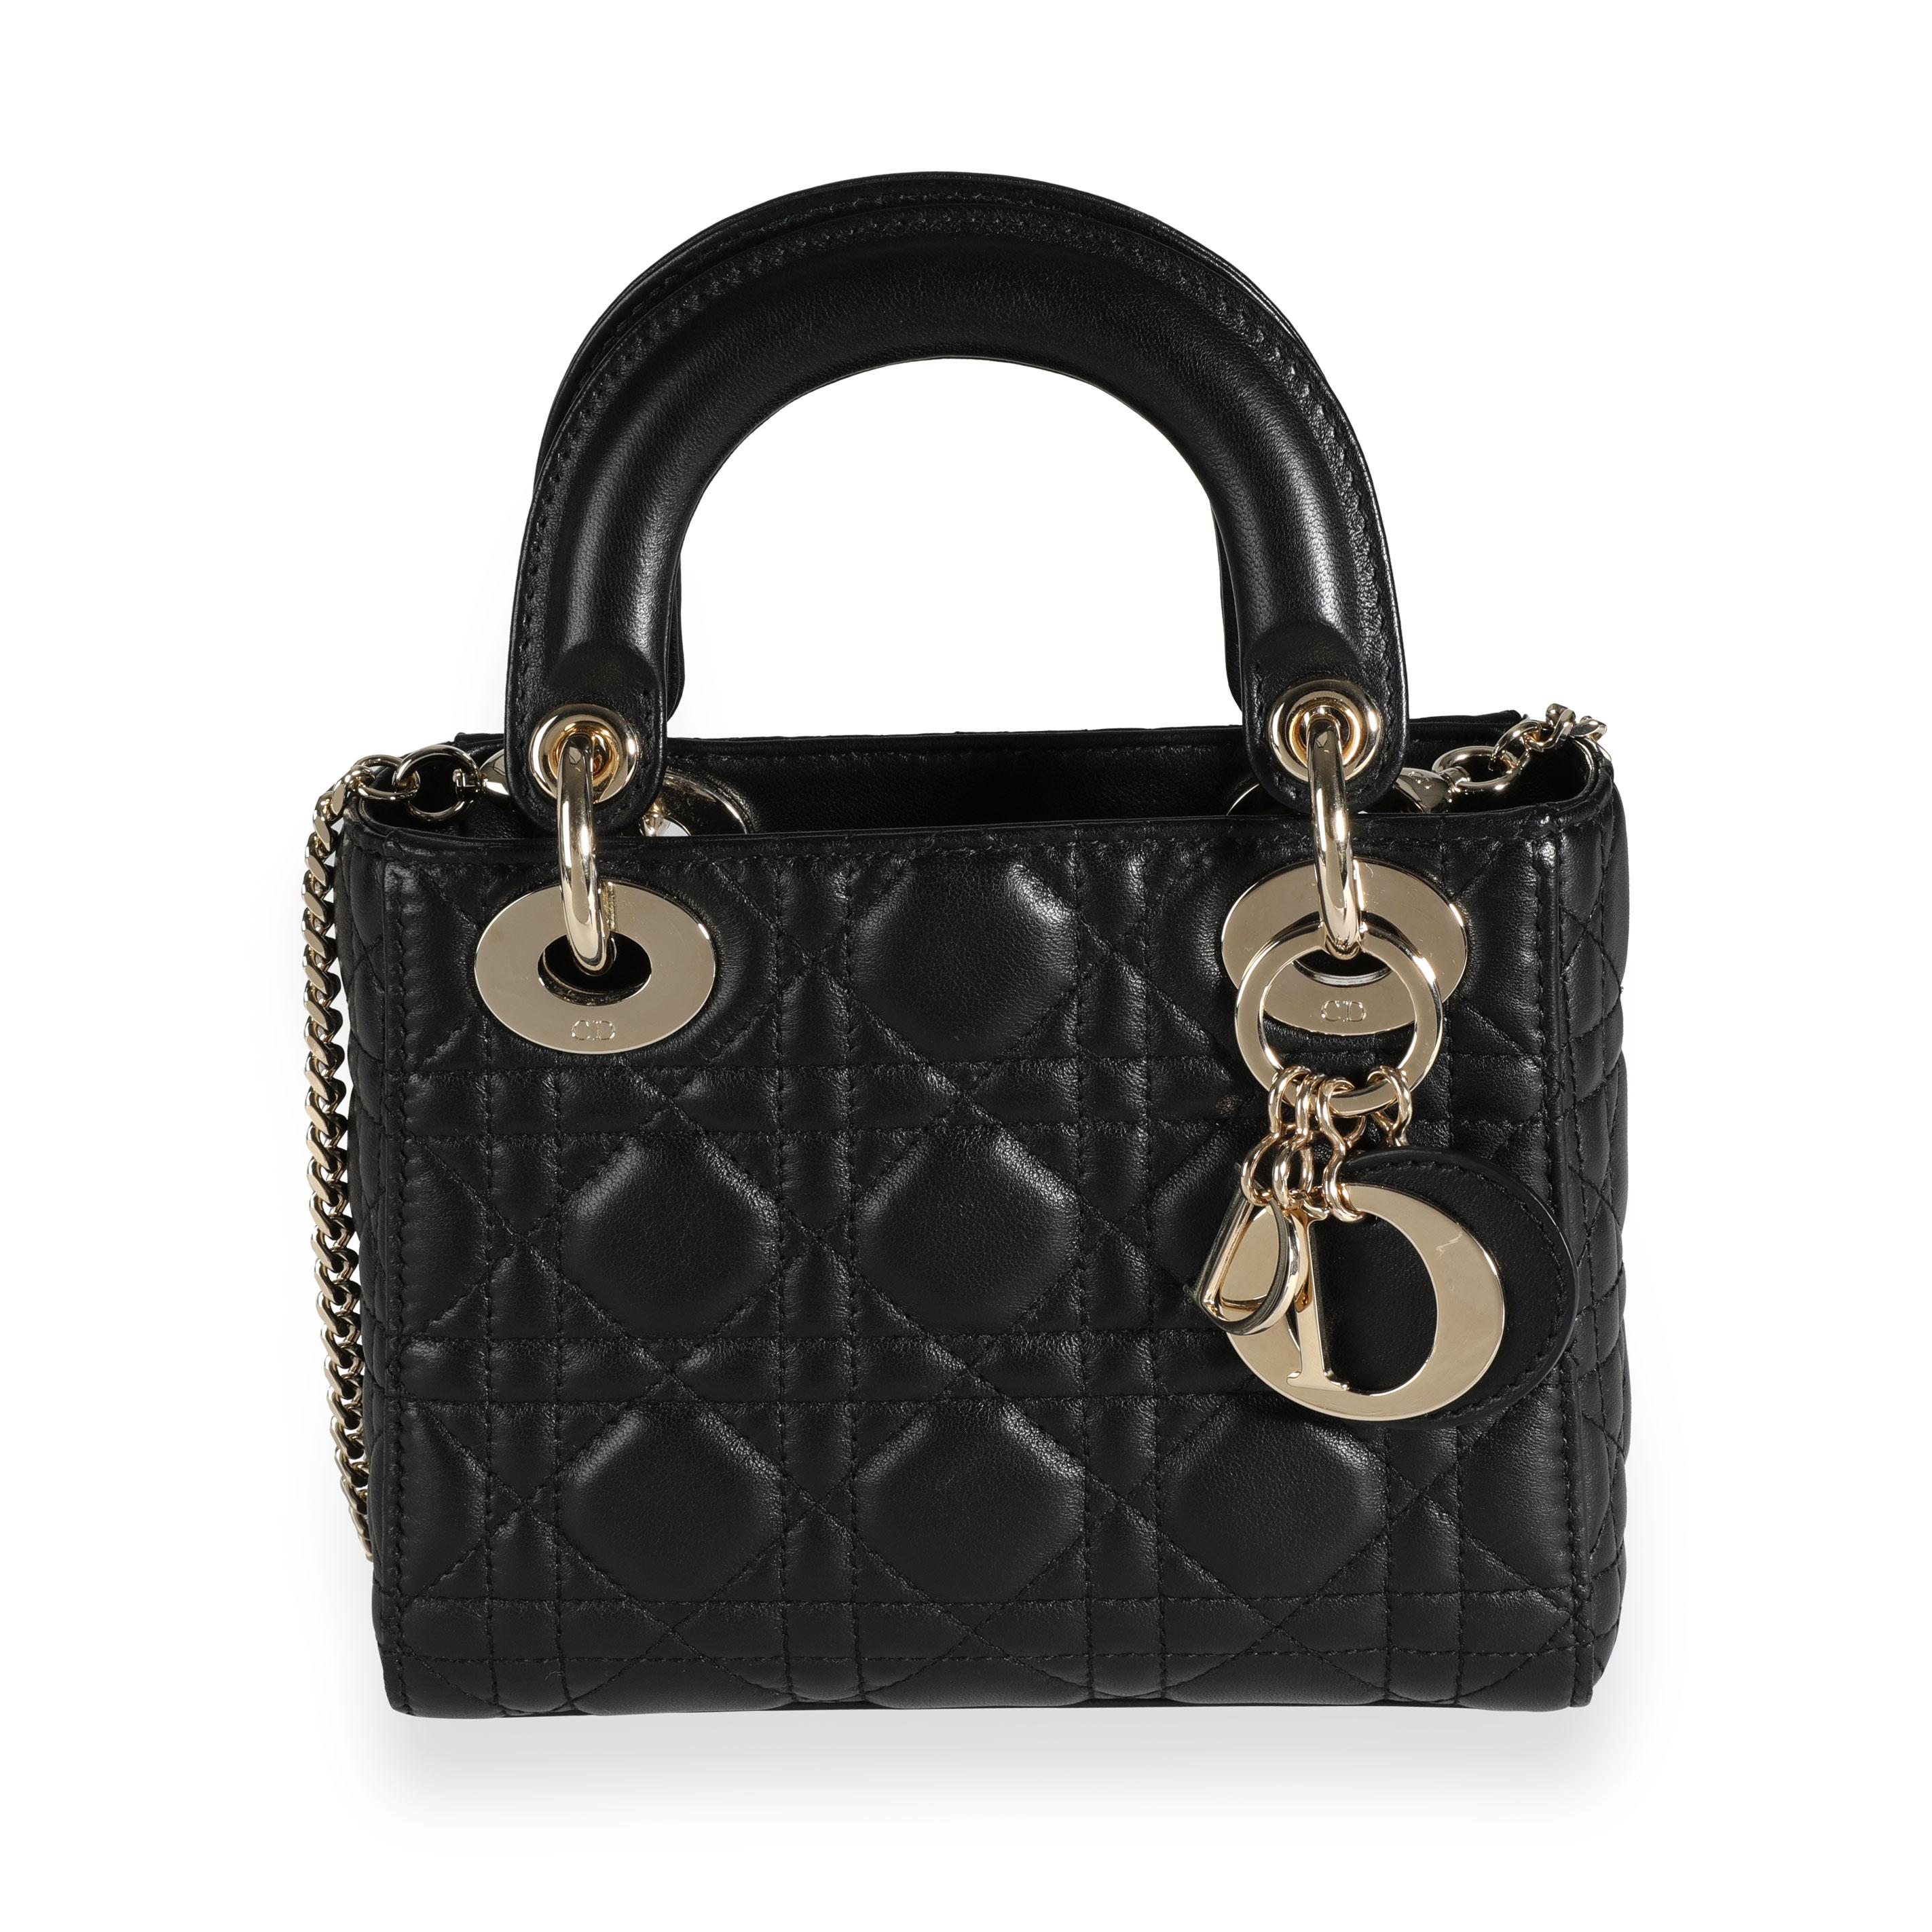 Tassen & portemonnees Handtassen Handtasinzetten Lady Dior Mini Christian Dior  Cannage quilted lambskin LADY DIOR 